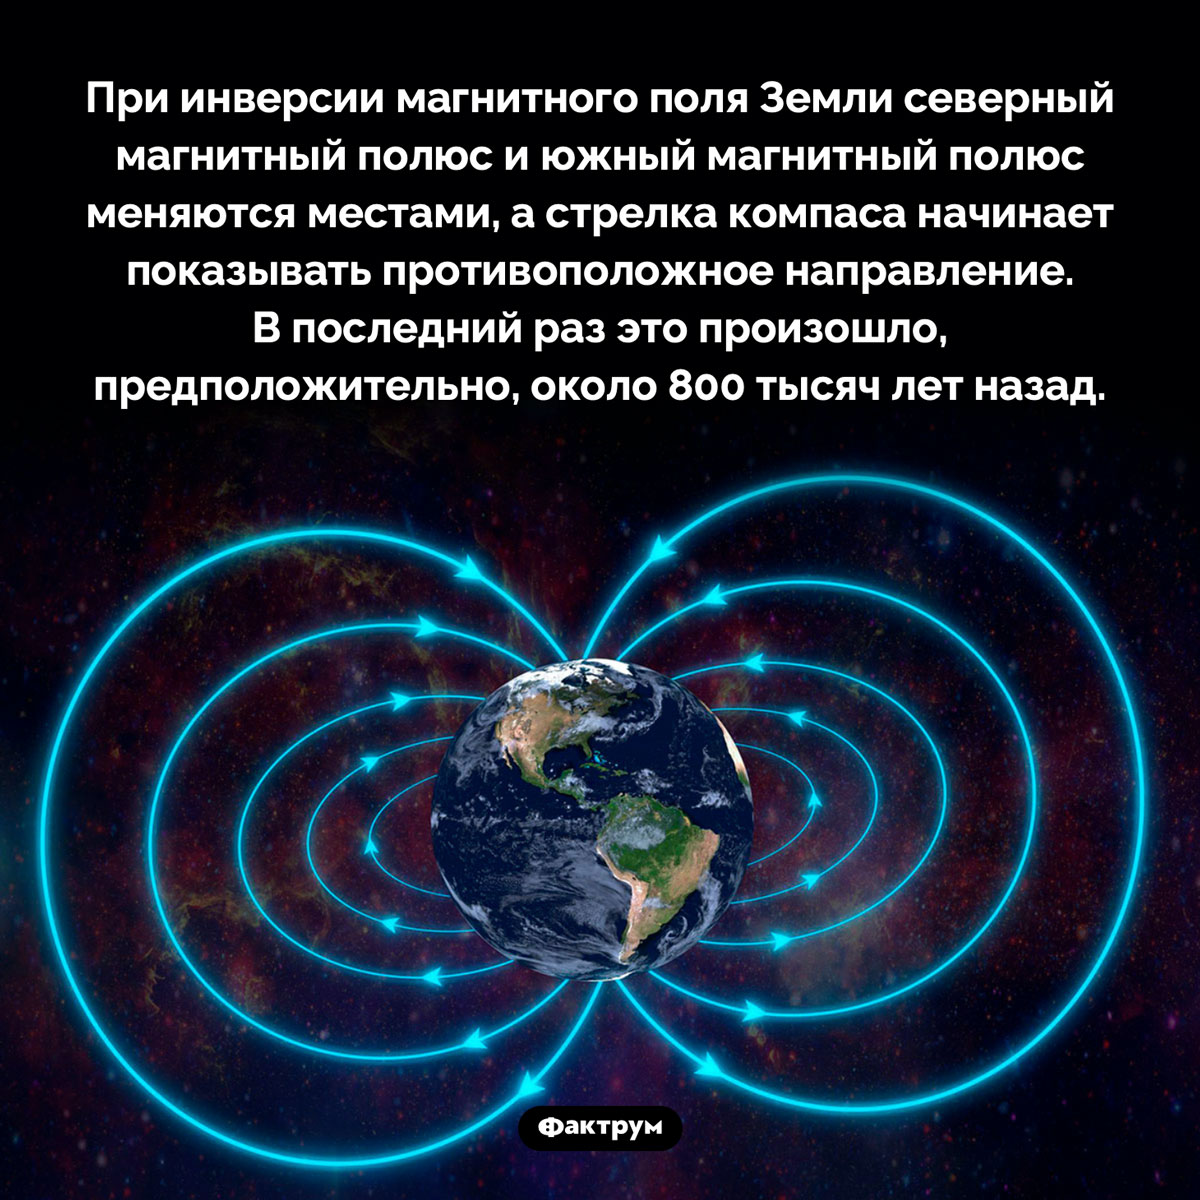 Что такое «инверсия магнитного поля Земли». При инверсии магнитного поля Земли северный магнитный полюс и южный магнитный полюс меняются местами, а стрелка компаса начинает показывать противоположное направление. В последний раз это произошло, предположительно, около 800 тысяч лет назад.